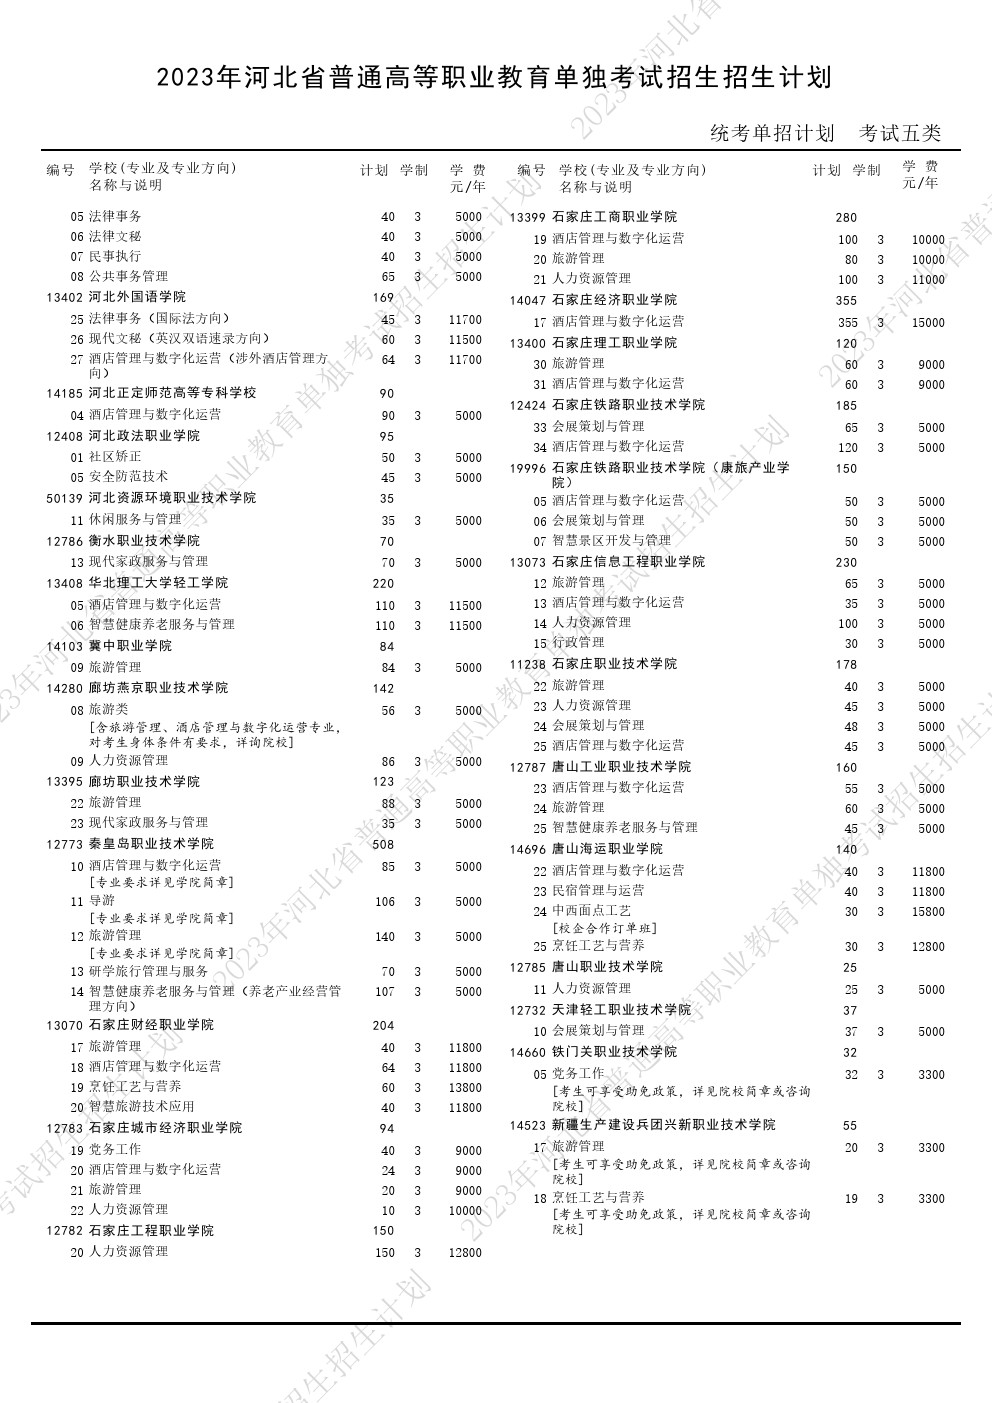 2023年河北省高职单招考试五类招生计划